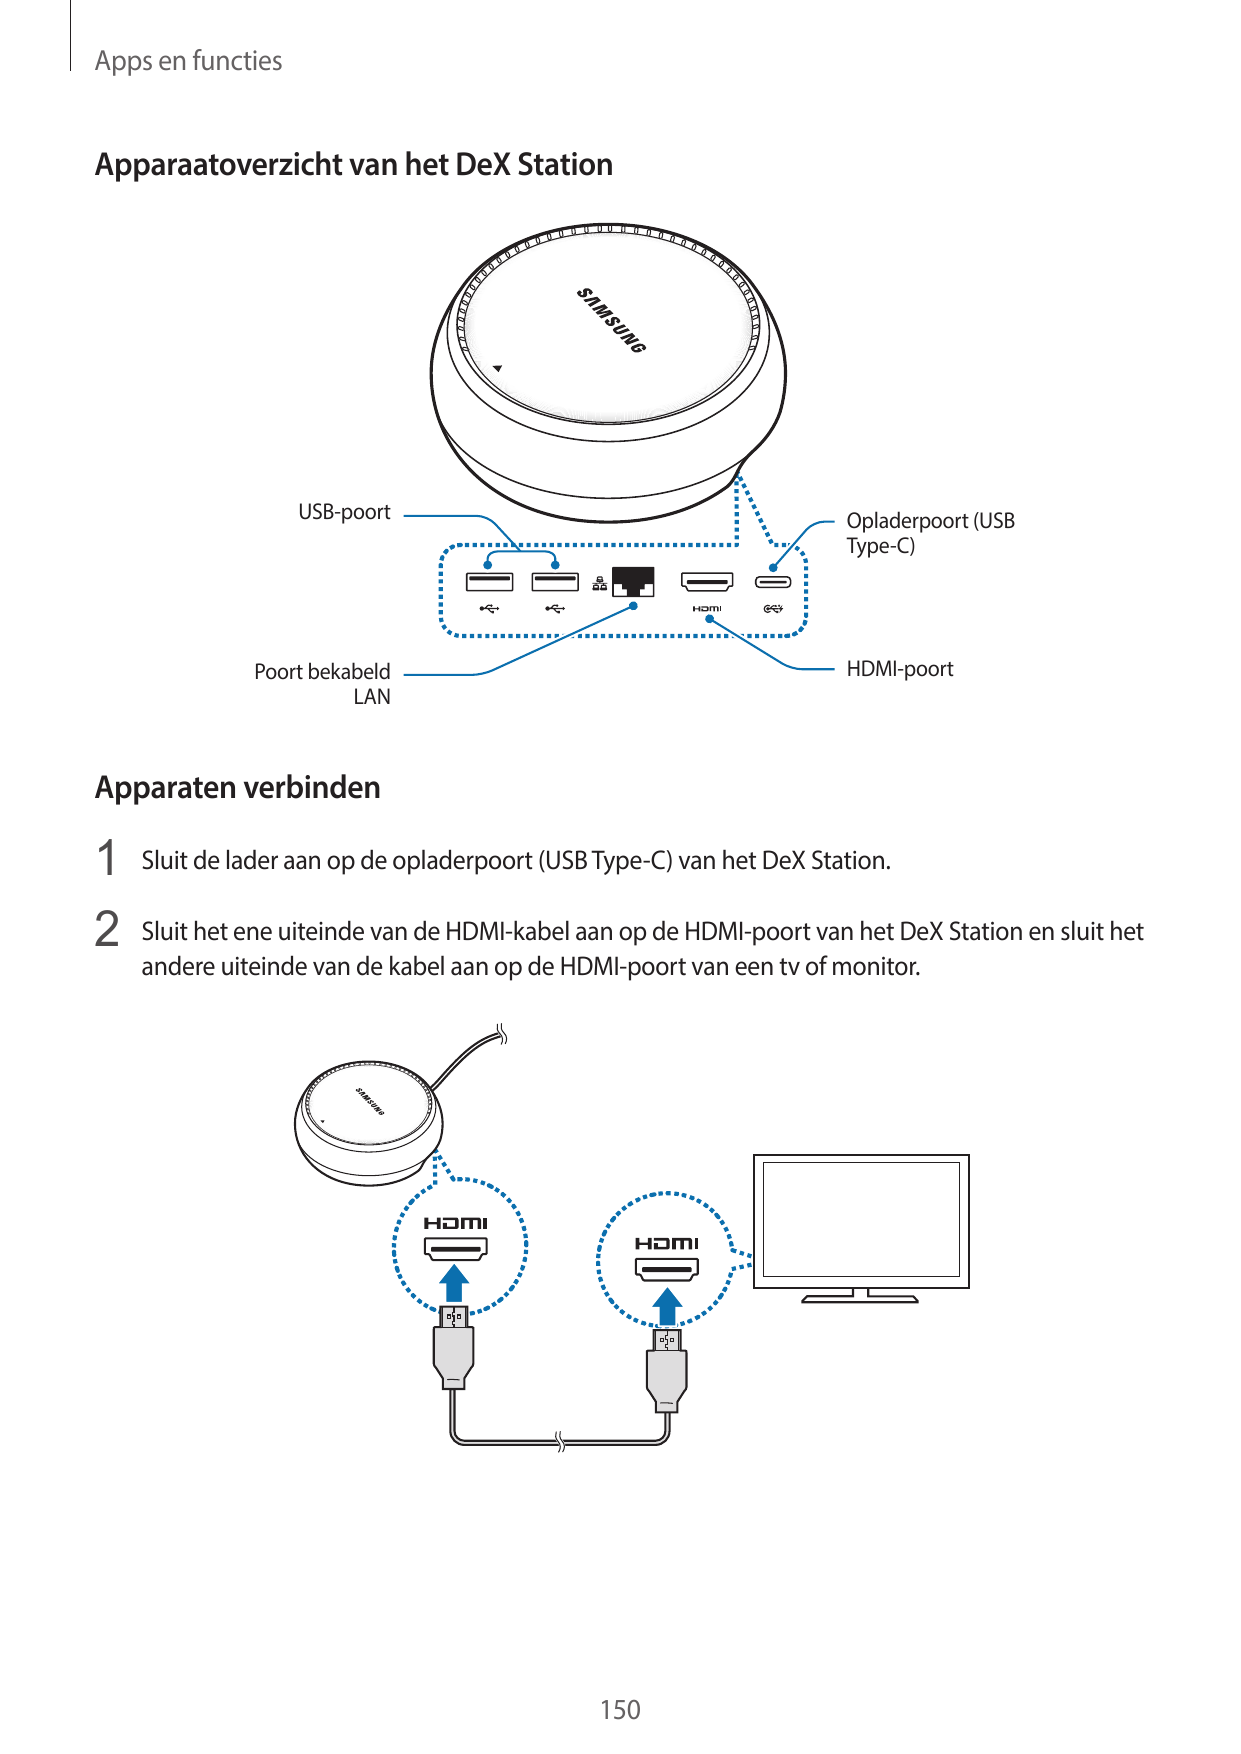 Apps en functiesApparaatoverzicht van het DeX StationUSB-poortOpladerpoort (USBType-C)HDMI-poortPoort bekabeldLANApparaten verbi